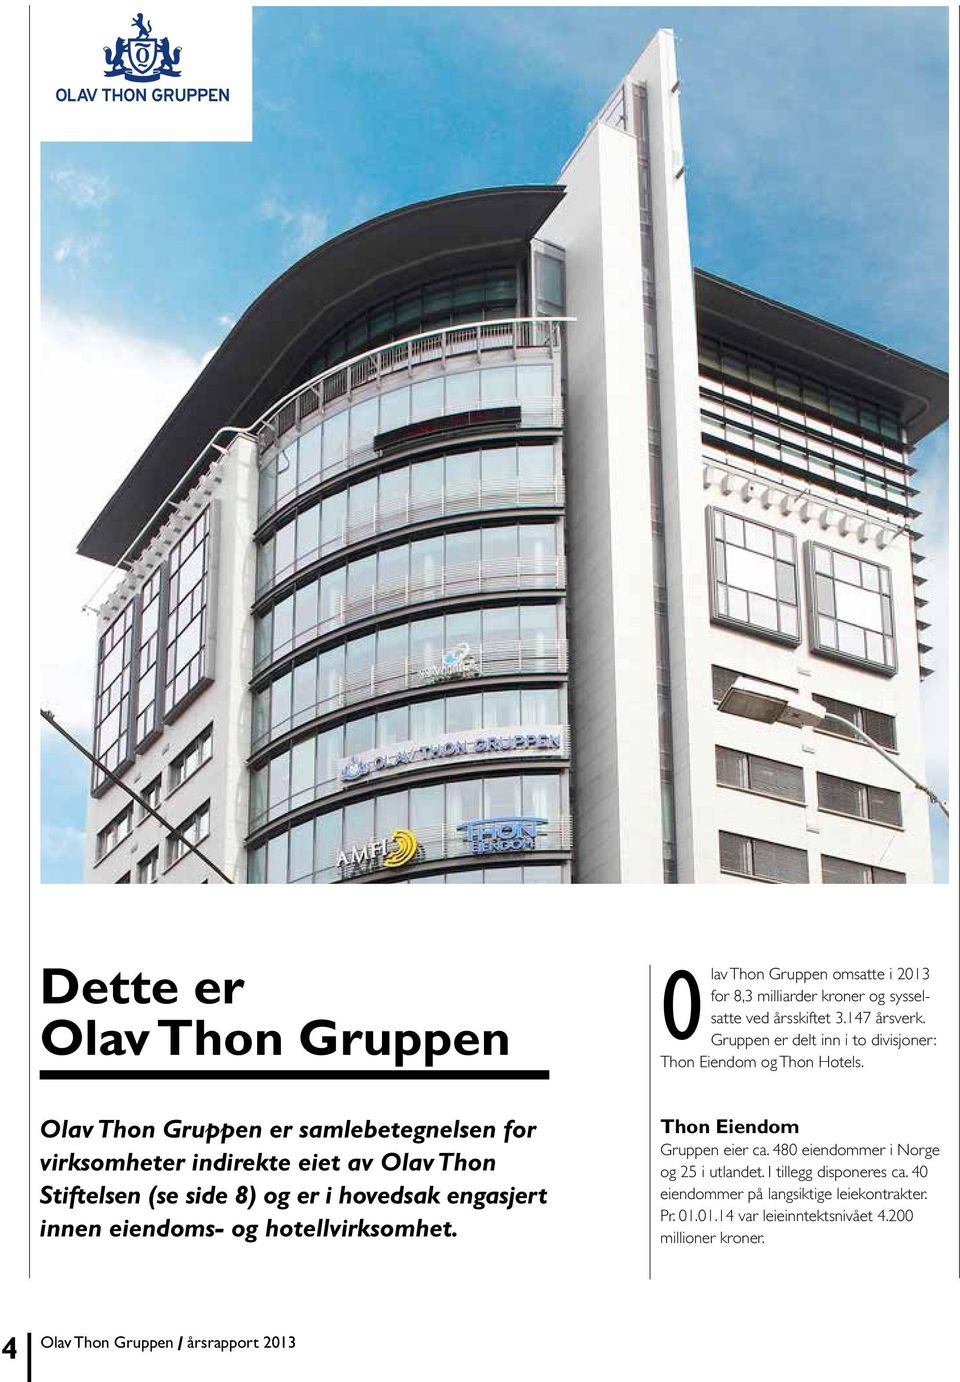 Olav Thon Gruppen er samlebetegnelsen for virksomheter indirekte eiet av Olav Thon Stiftelsen (se side 8) og er i hovedsak engasjert innen eiendoms- og